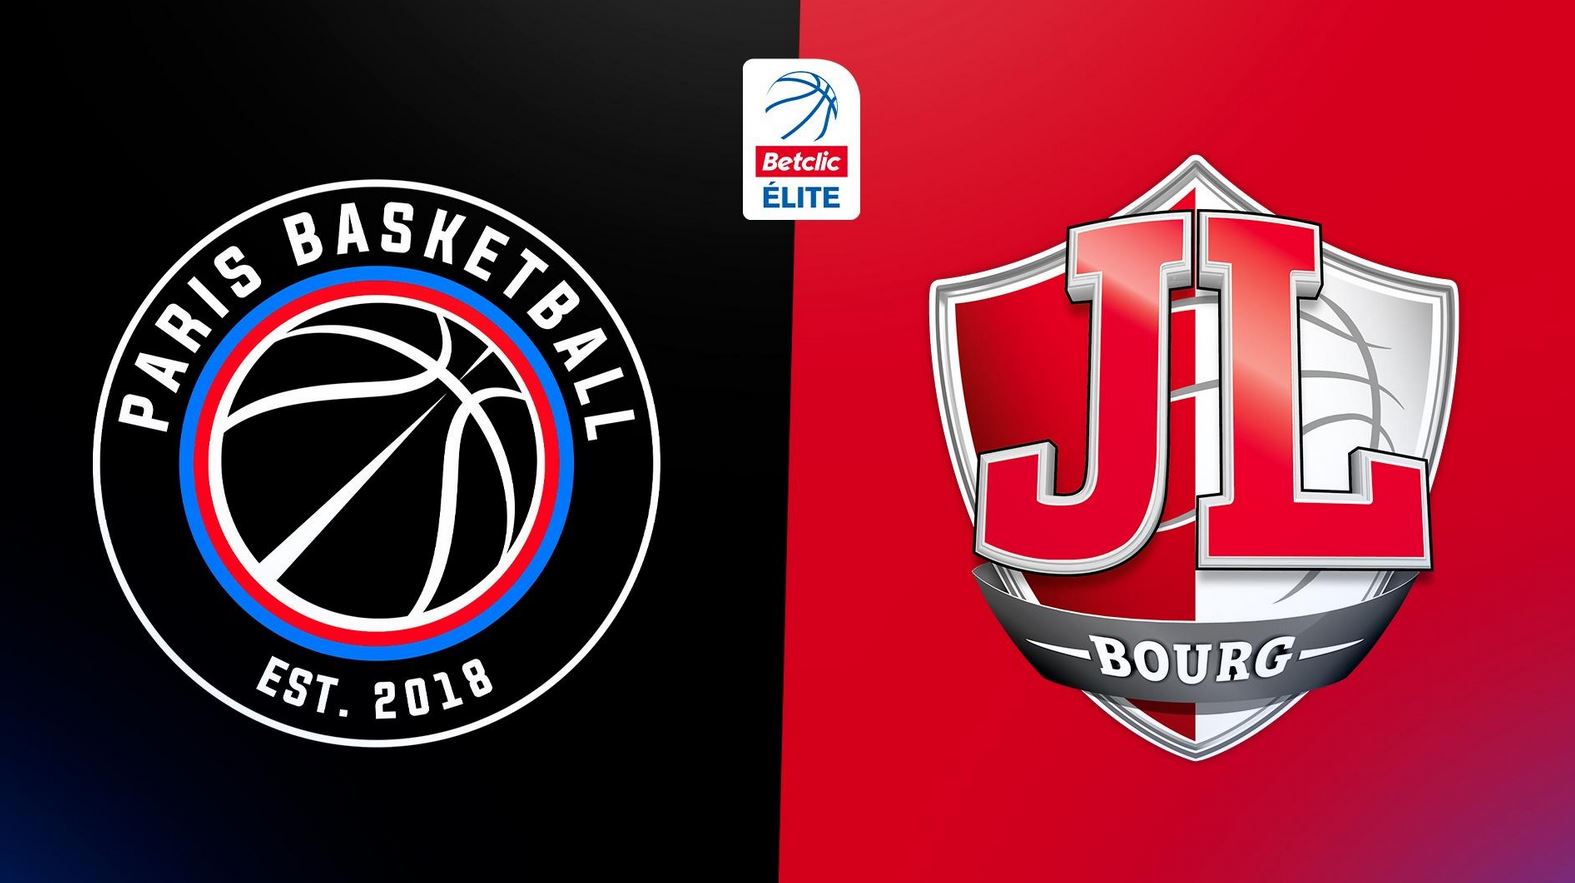 Paris Basket / Bourg-en-Bresse (TV/Streaming) Sur quelle chaîne et à quelle heure regarder le match de Betclic Elite ?